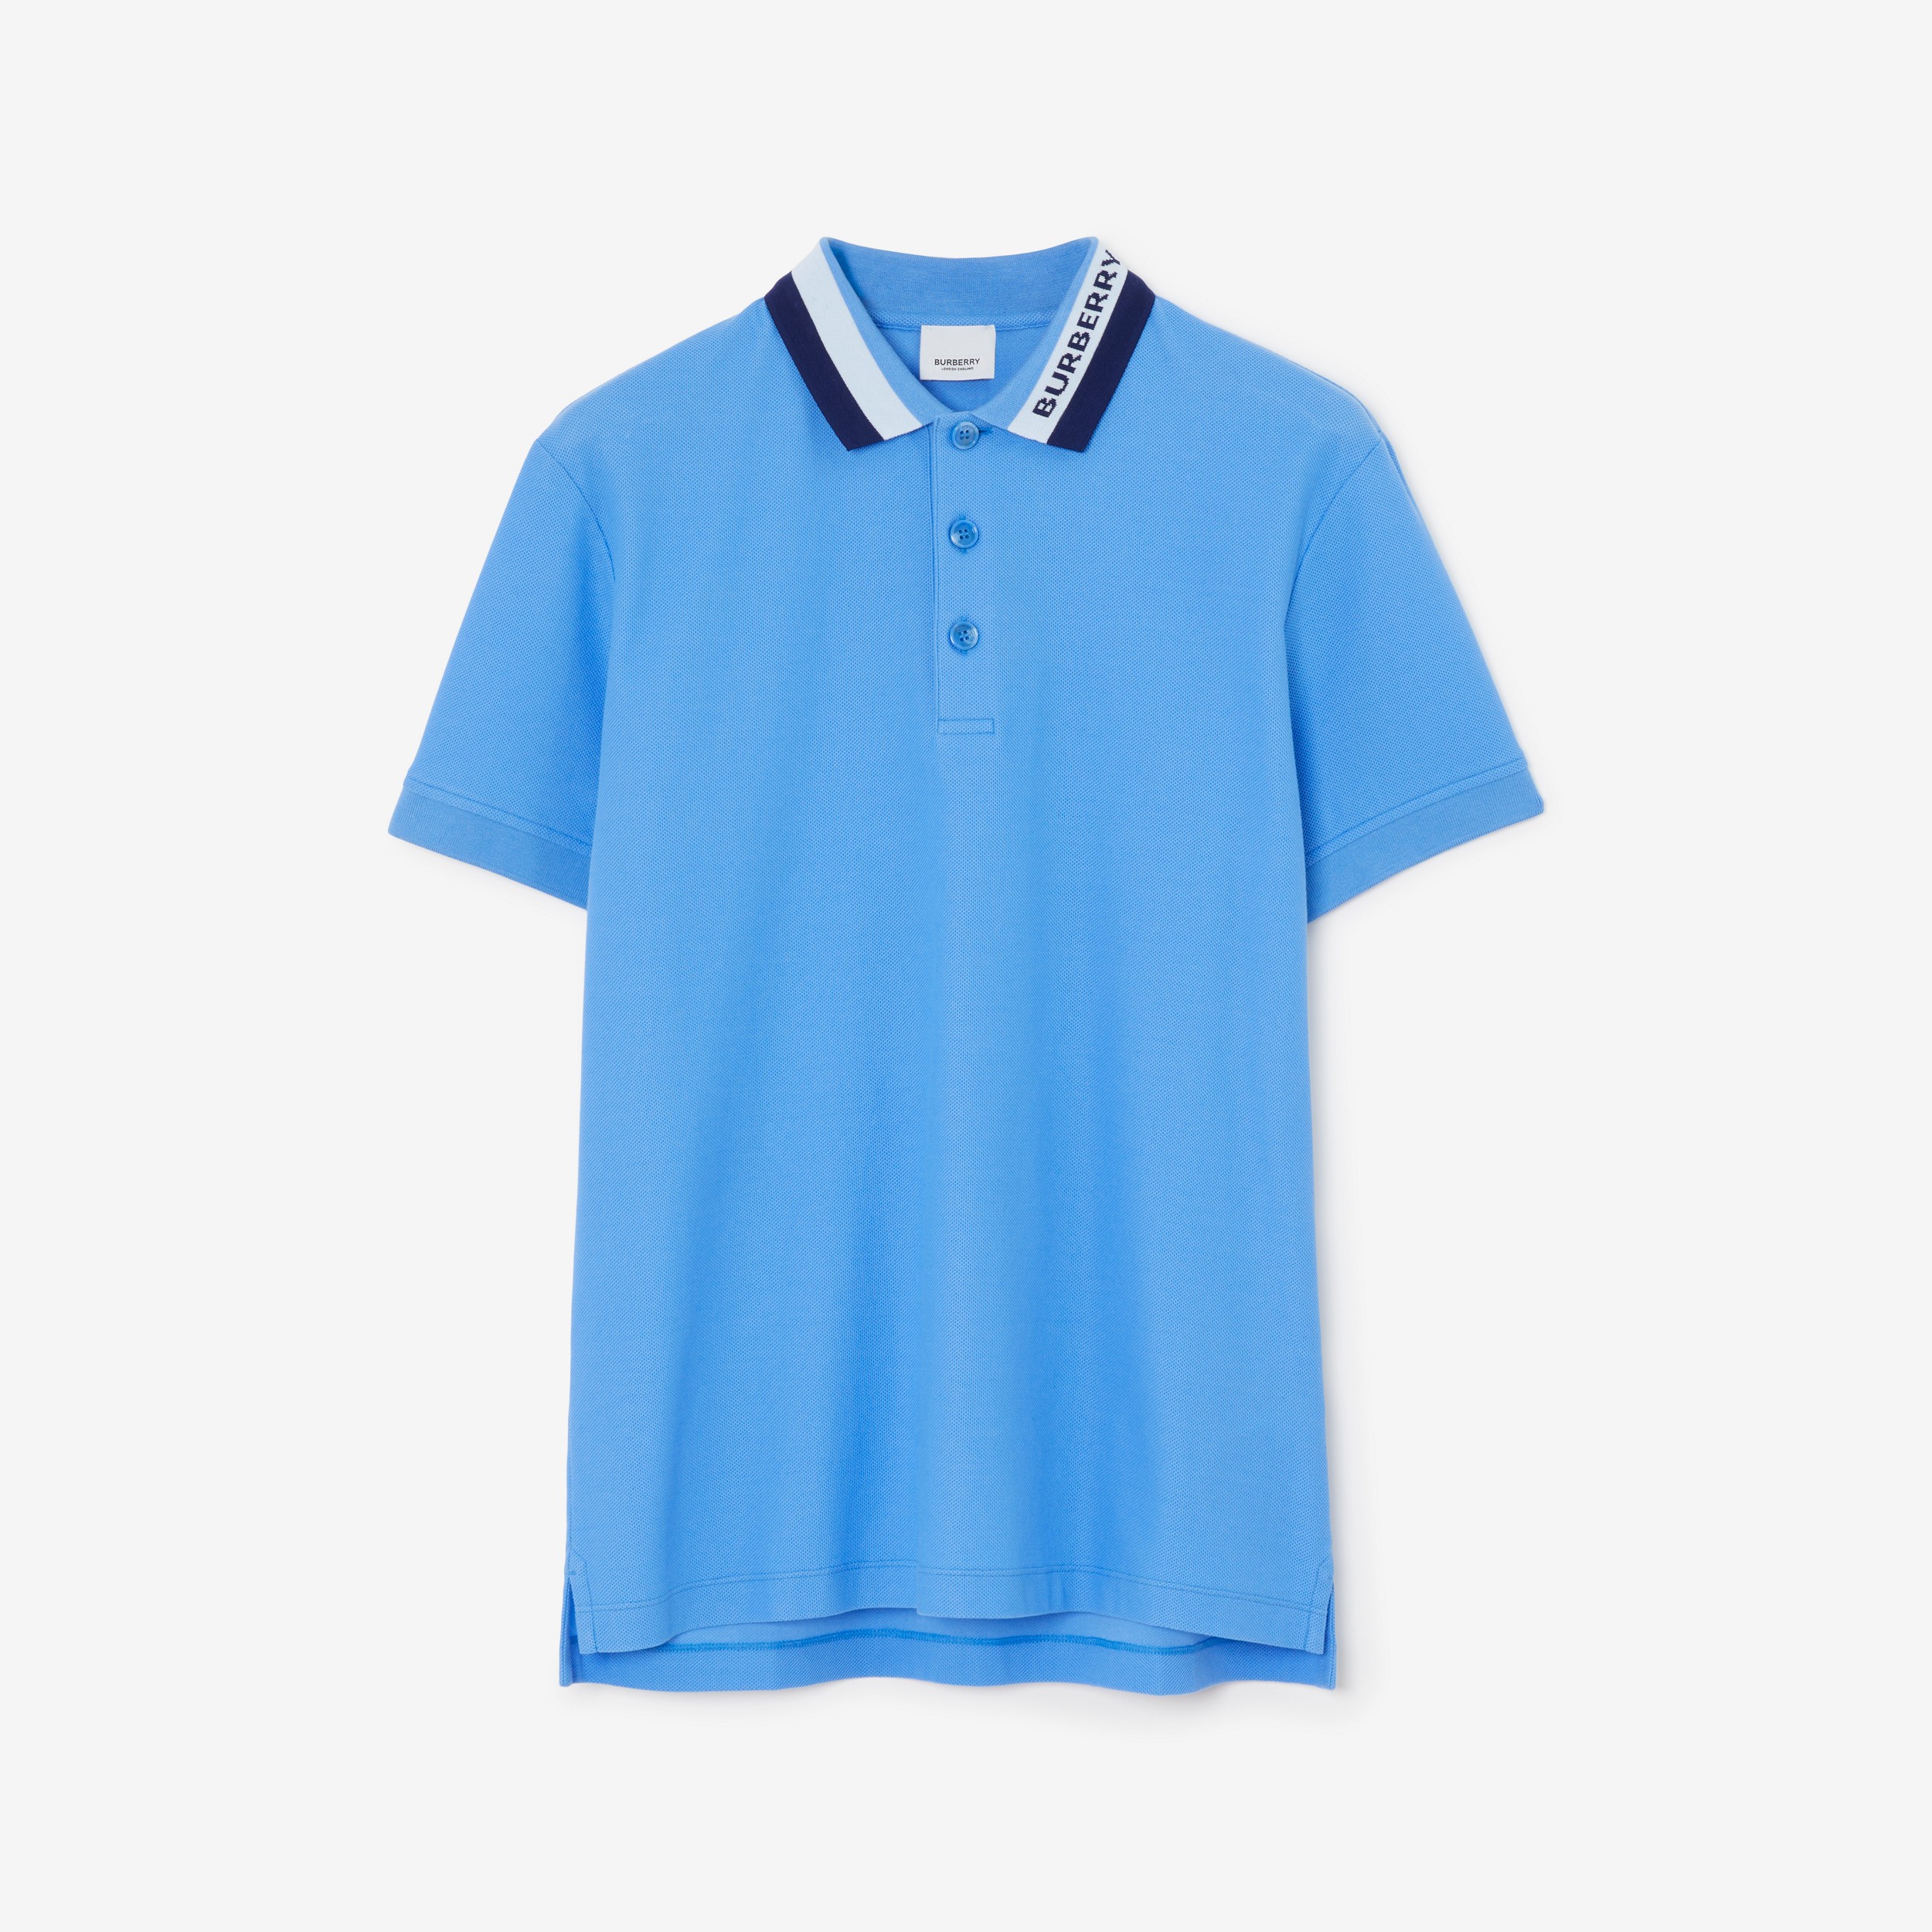 Poloshirt aus Baumwollpiqué mit Logo (Rauchiges Azurblau) - Herren | Burberry® - 1